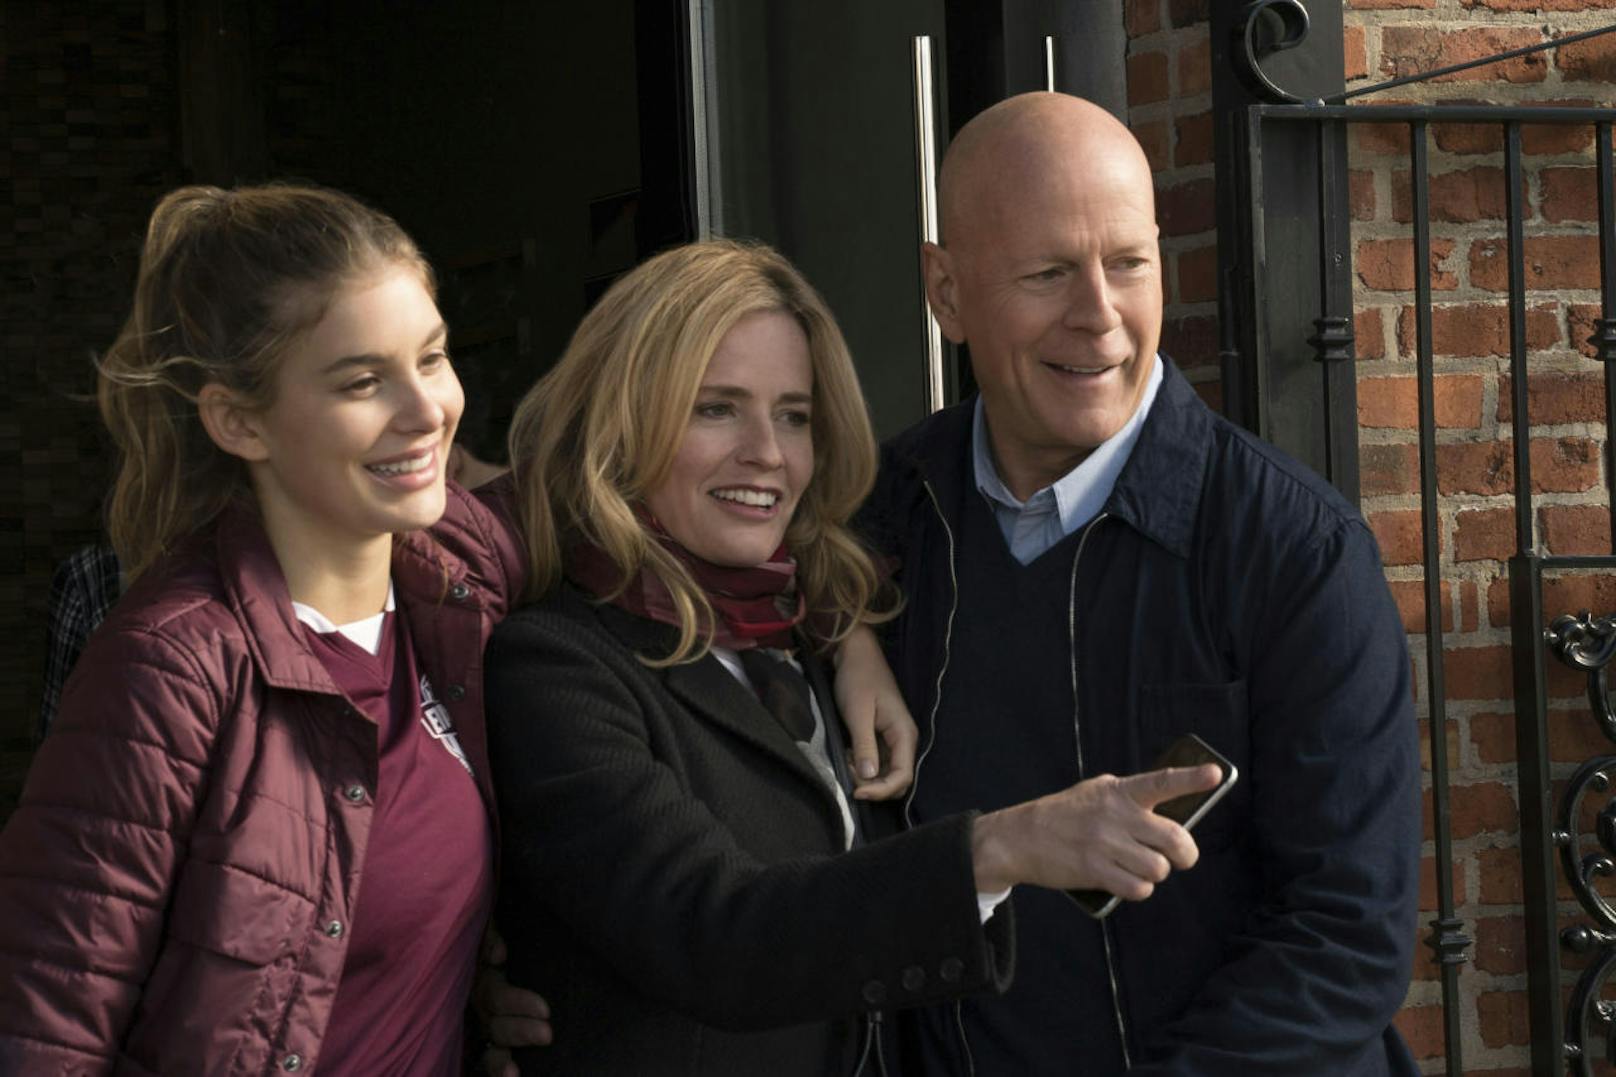 Vergangene glückliche Zeiten: Frank Kersey (Bruce Willis), seine Frau Lucy (Elisabeth Shue) und seine Tochter Jordan (Camila Morrone) in "Death Wish". 